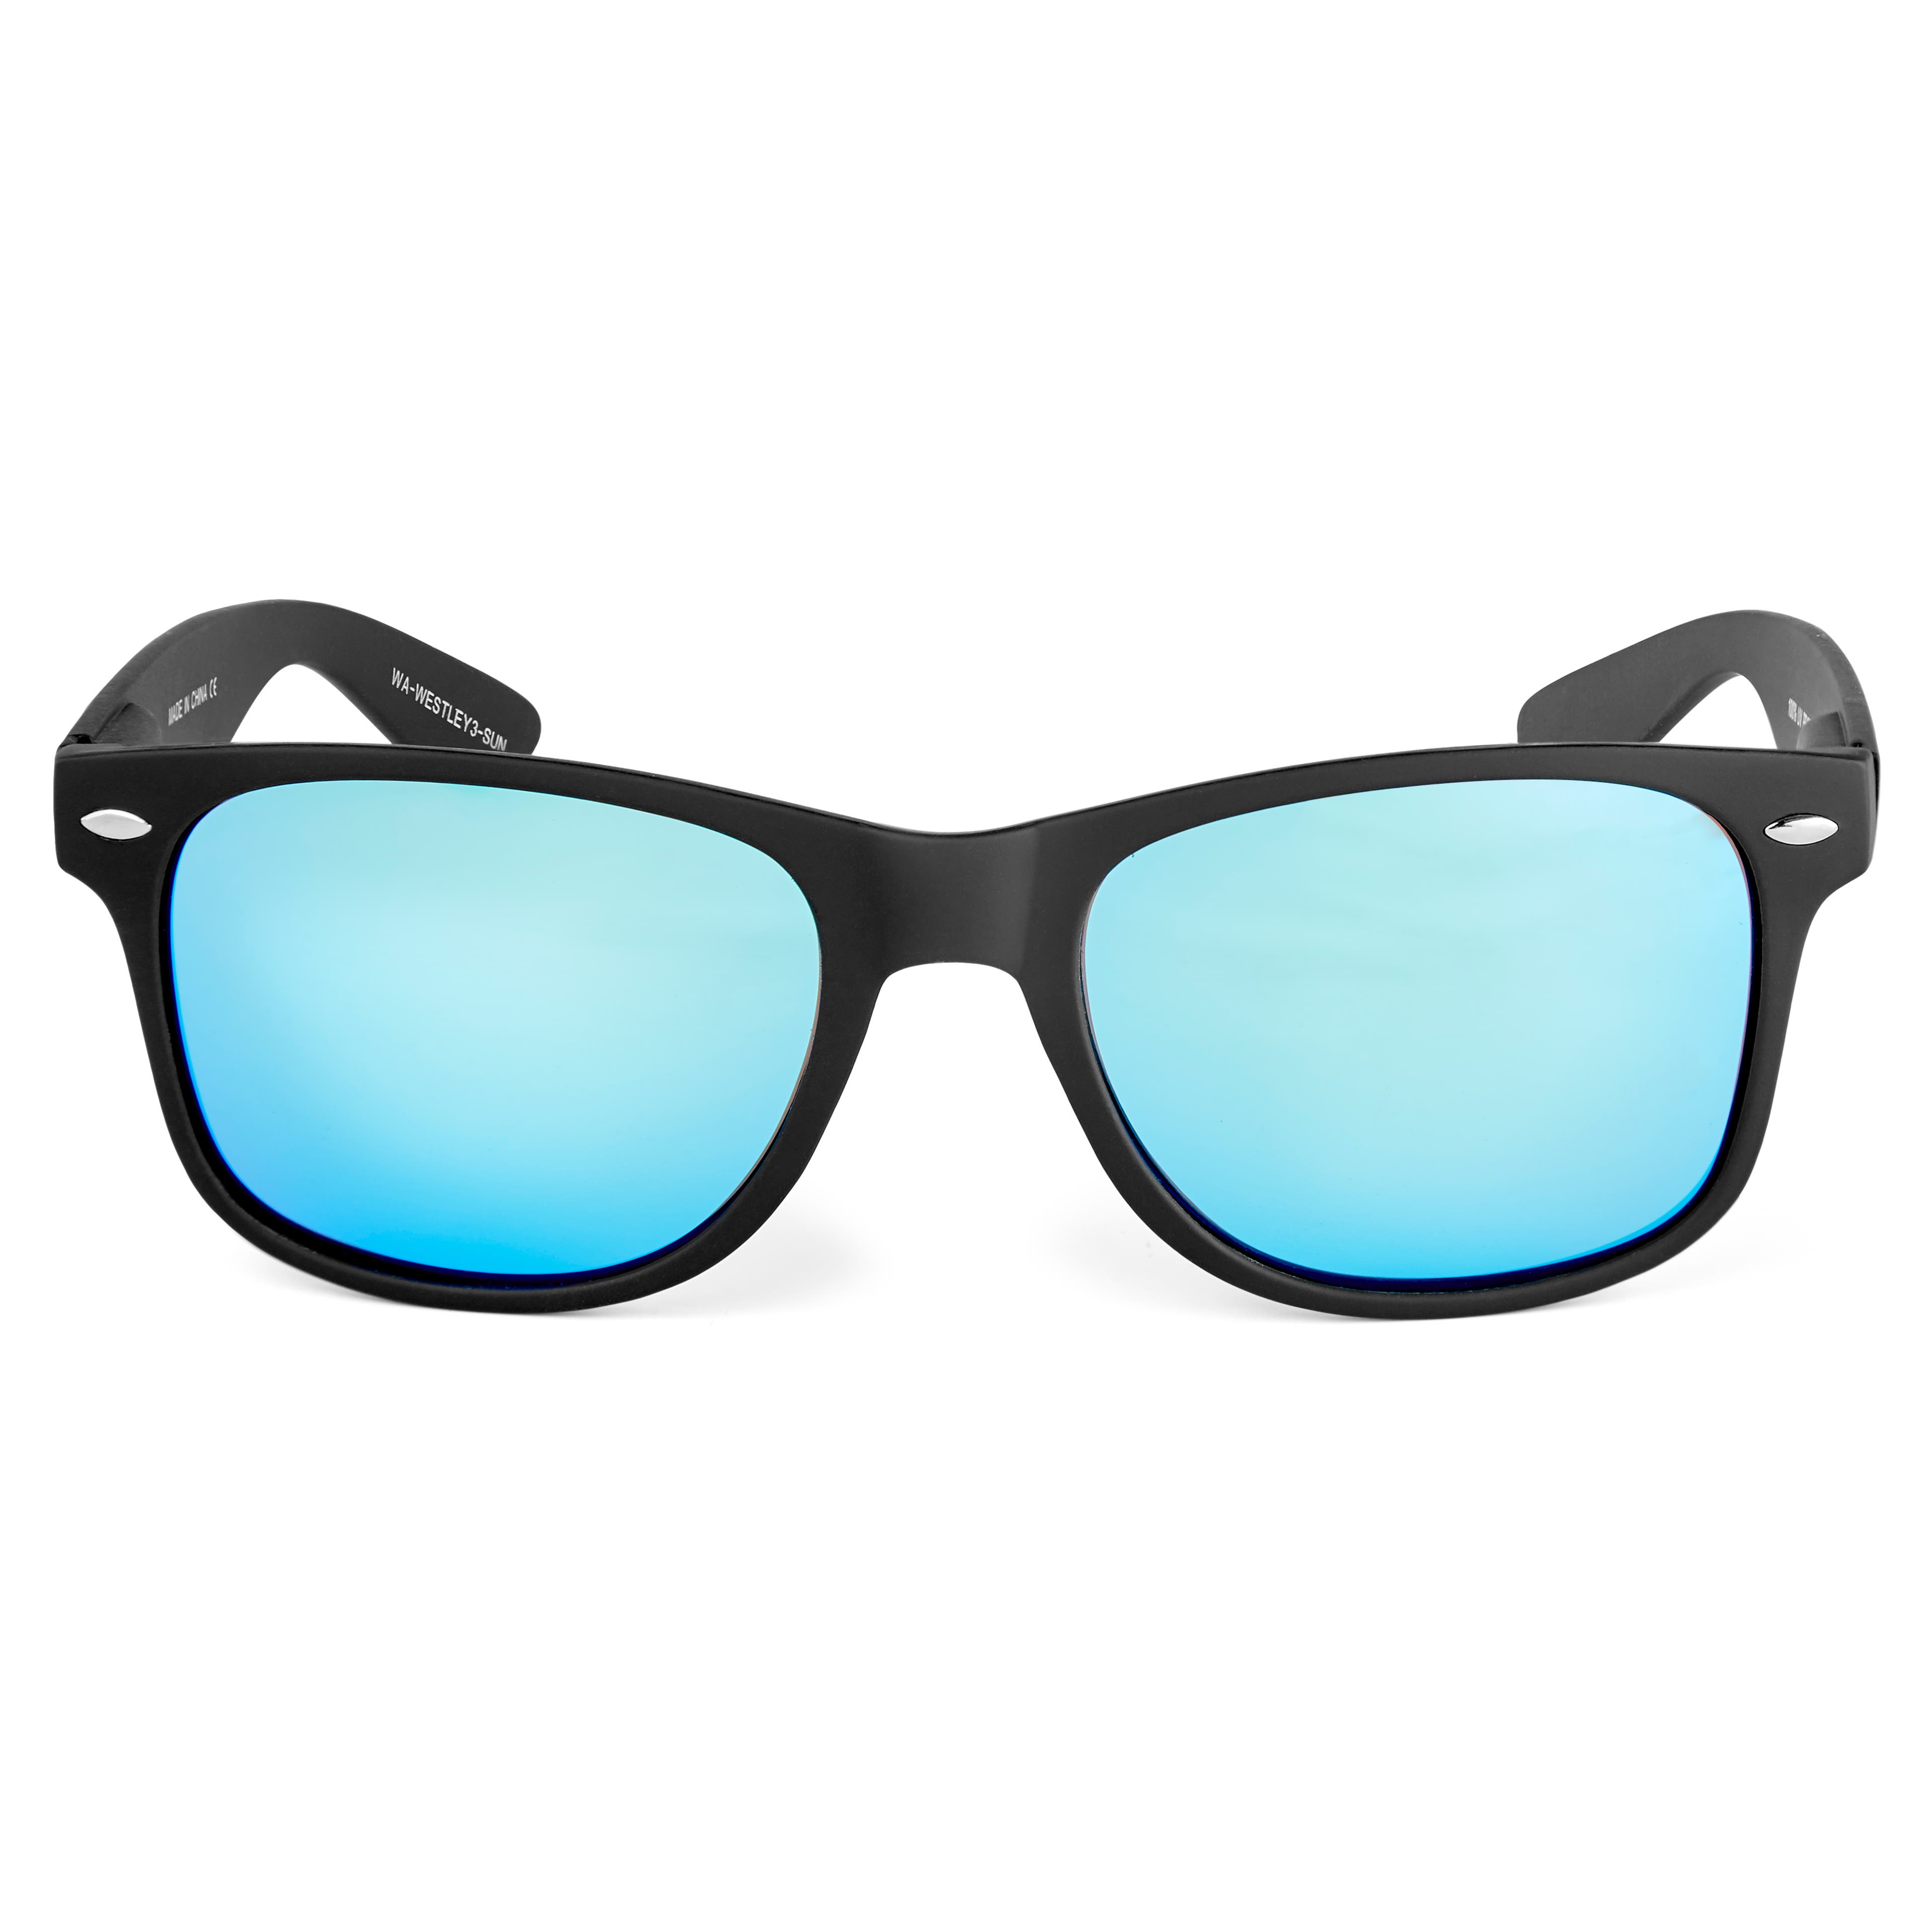 Gafas de sol con espejo azul Westley